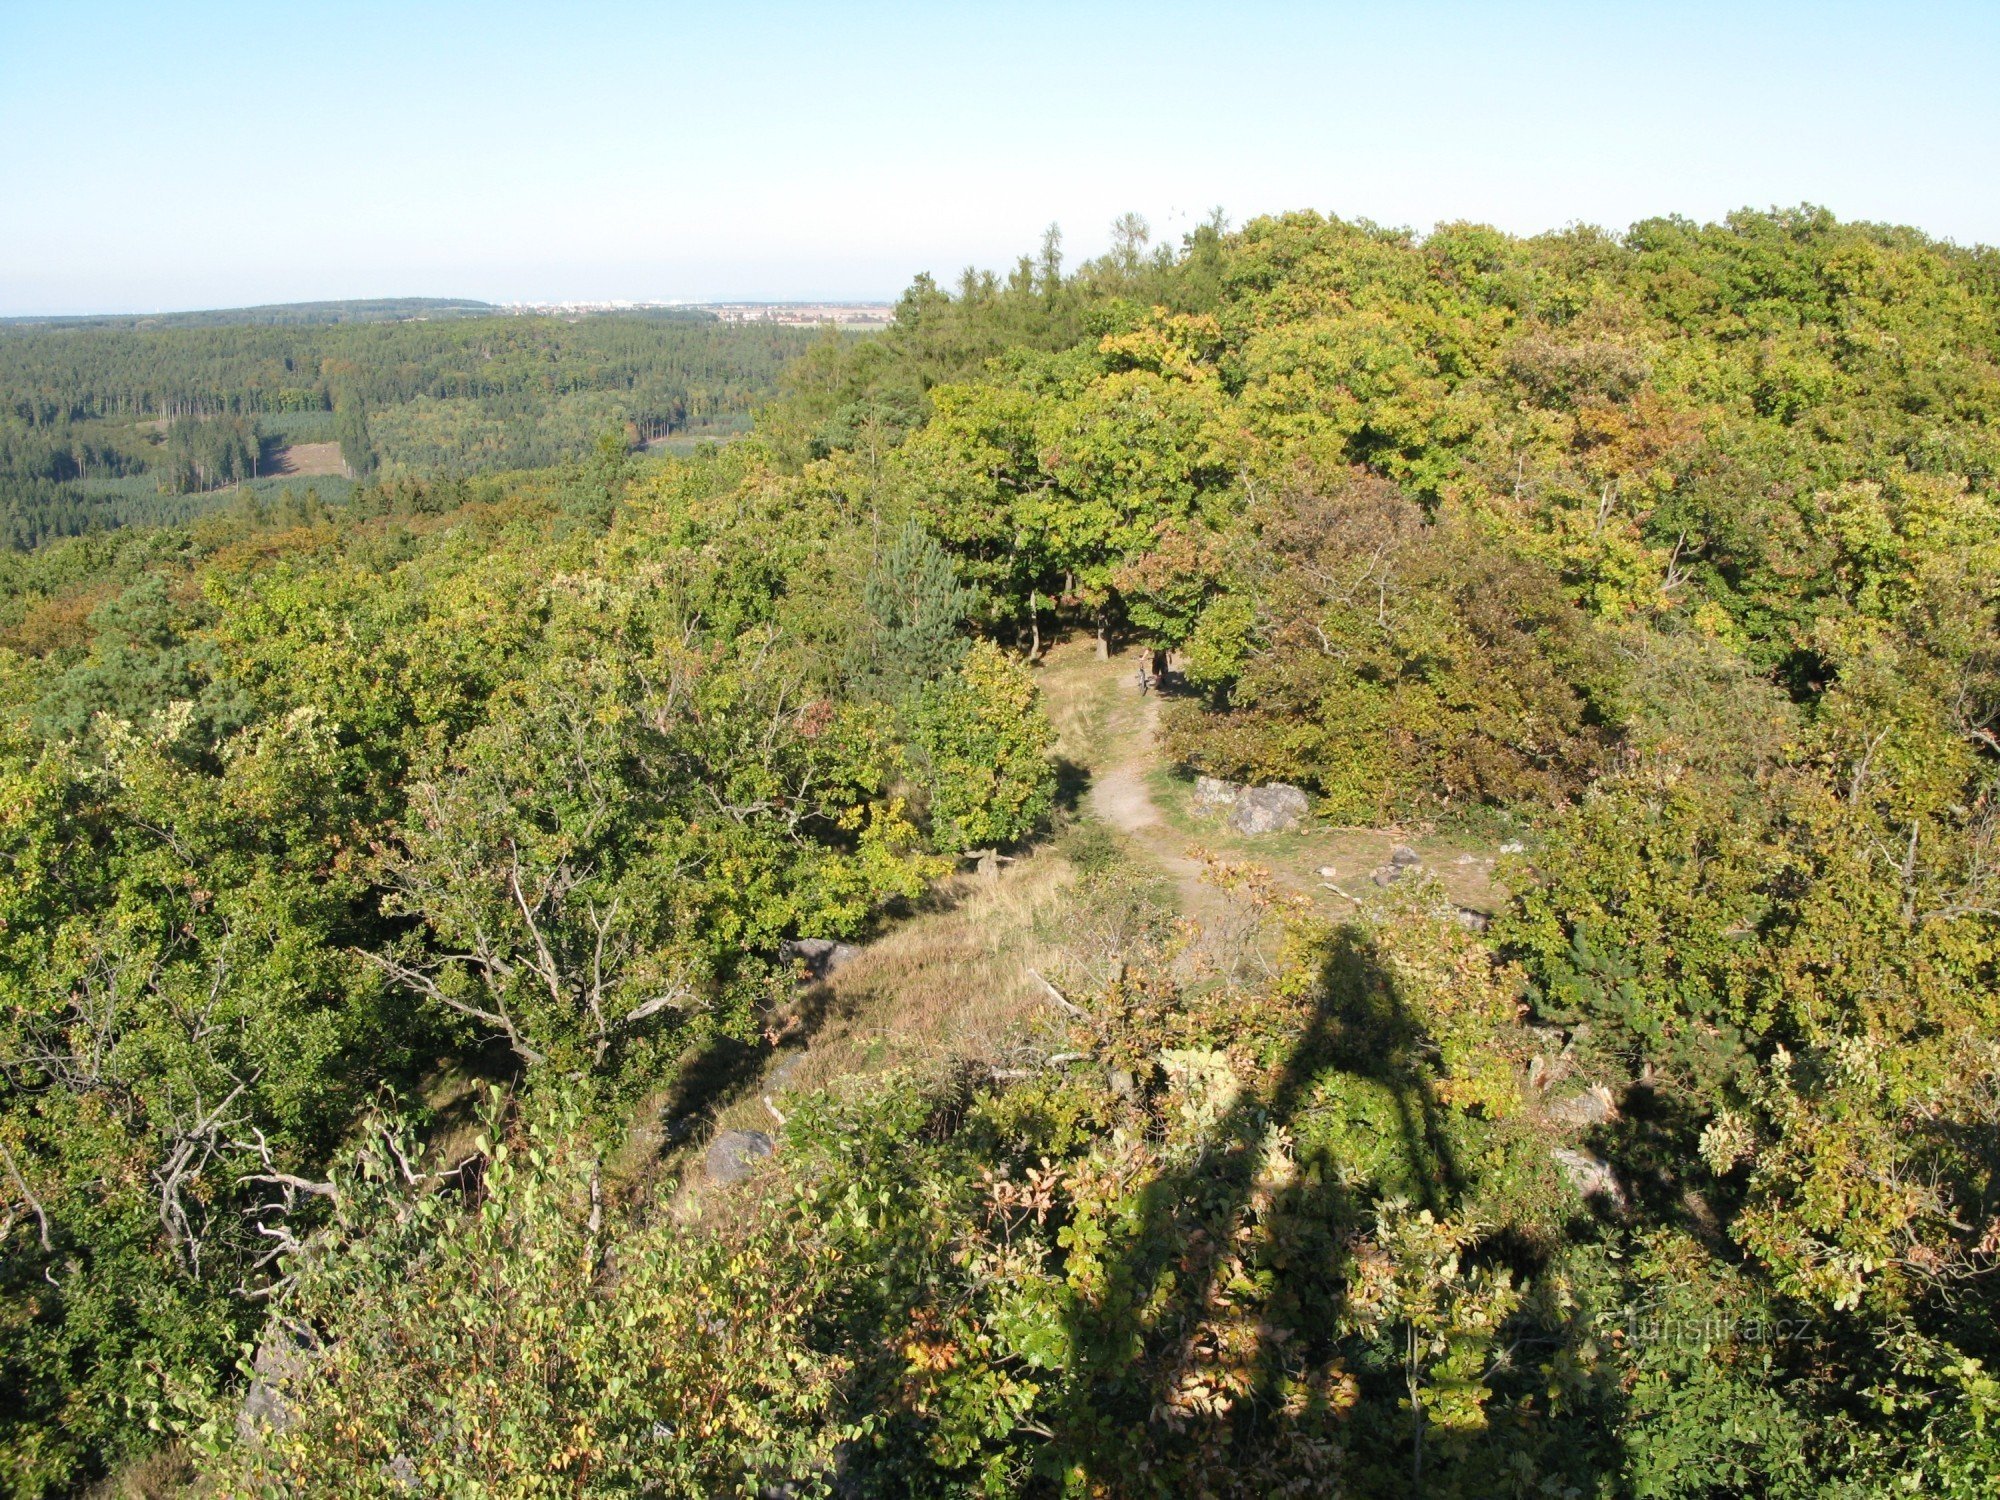 Haute colline, route d'accès à la tour d'observation